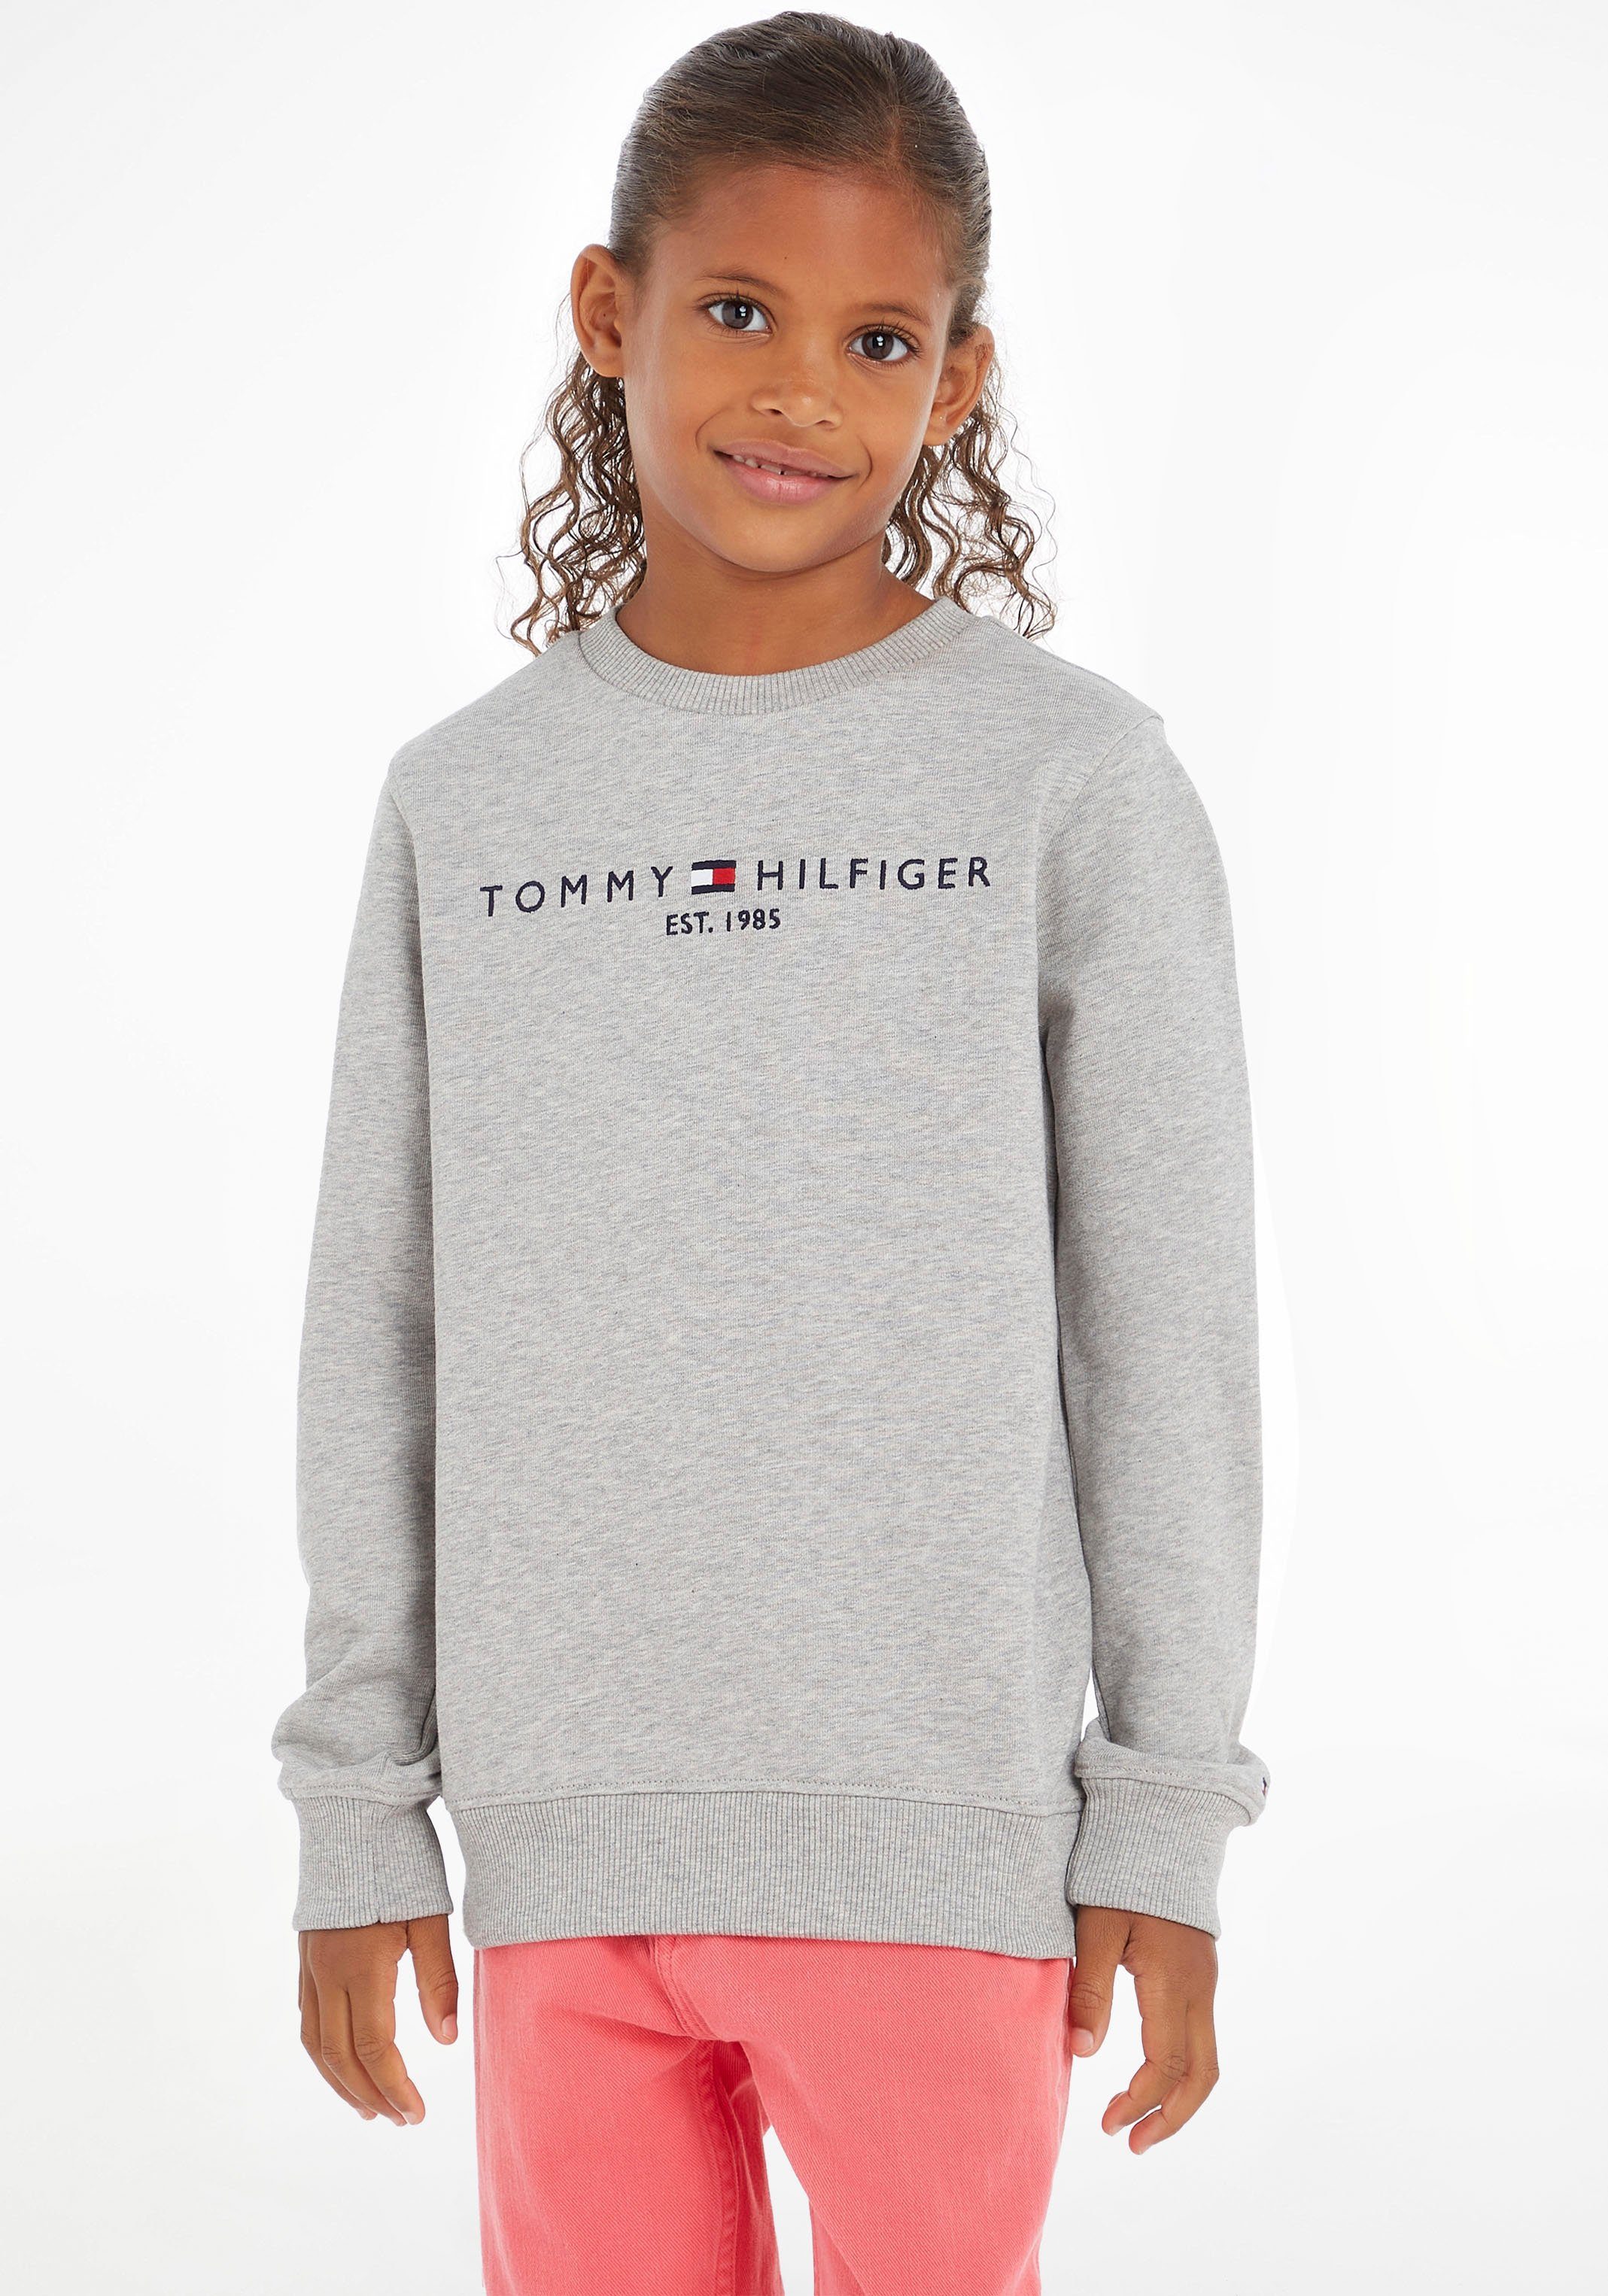 Mit großem Jungen Kids der Junior SWEATSHIRT Mädchen, Tommy Logoschriftzug auf Brust MiniMe,für und Kinder Hilfiger ESSENTIAL Sweatshirt